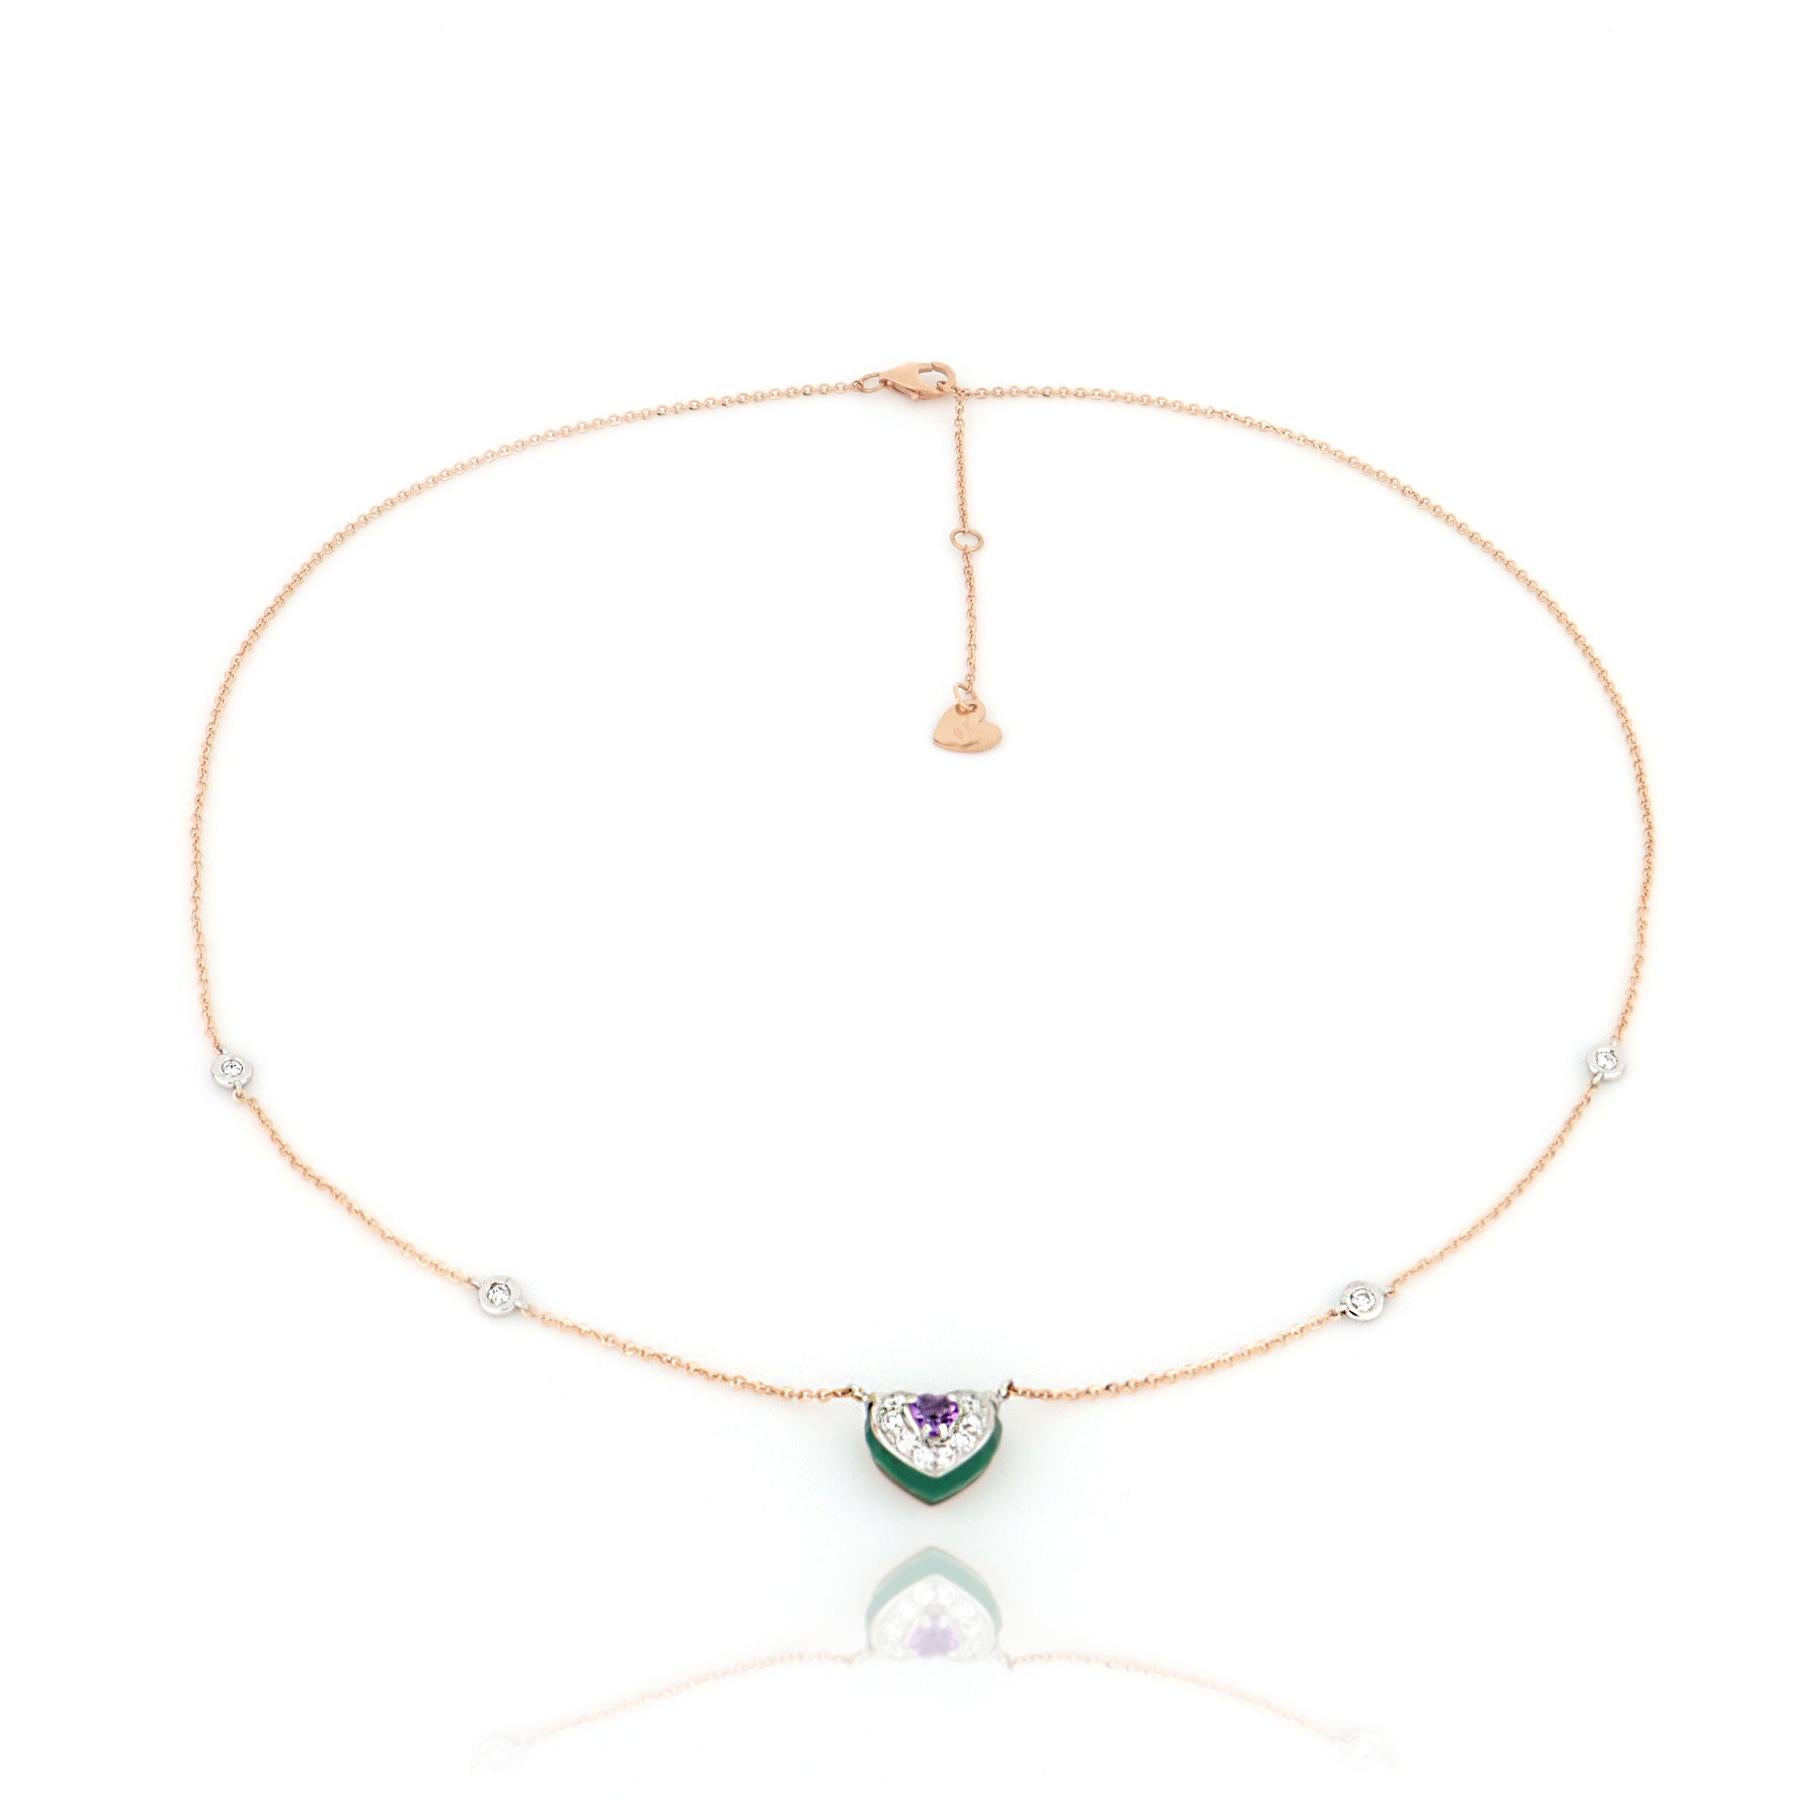 Eine frische und verspielte Geometrie für das Zentrum dieser Halskette aus Roségold. Violetter Amethyst und grüner Onyx in einer Kombination aus Kontrasten, verziert mit glänzenden Diamanten.

Halskette, Länge 43 cm mit Verlängerung bei 45 cm und 48